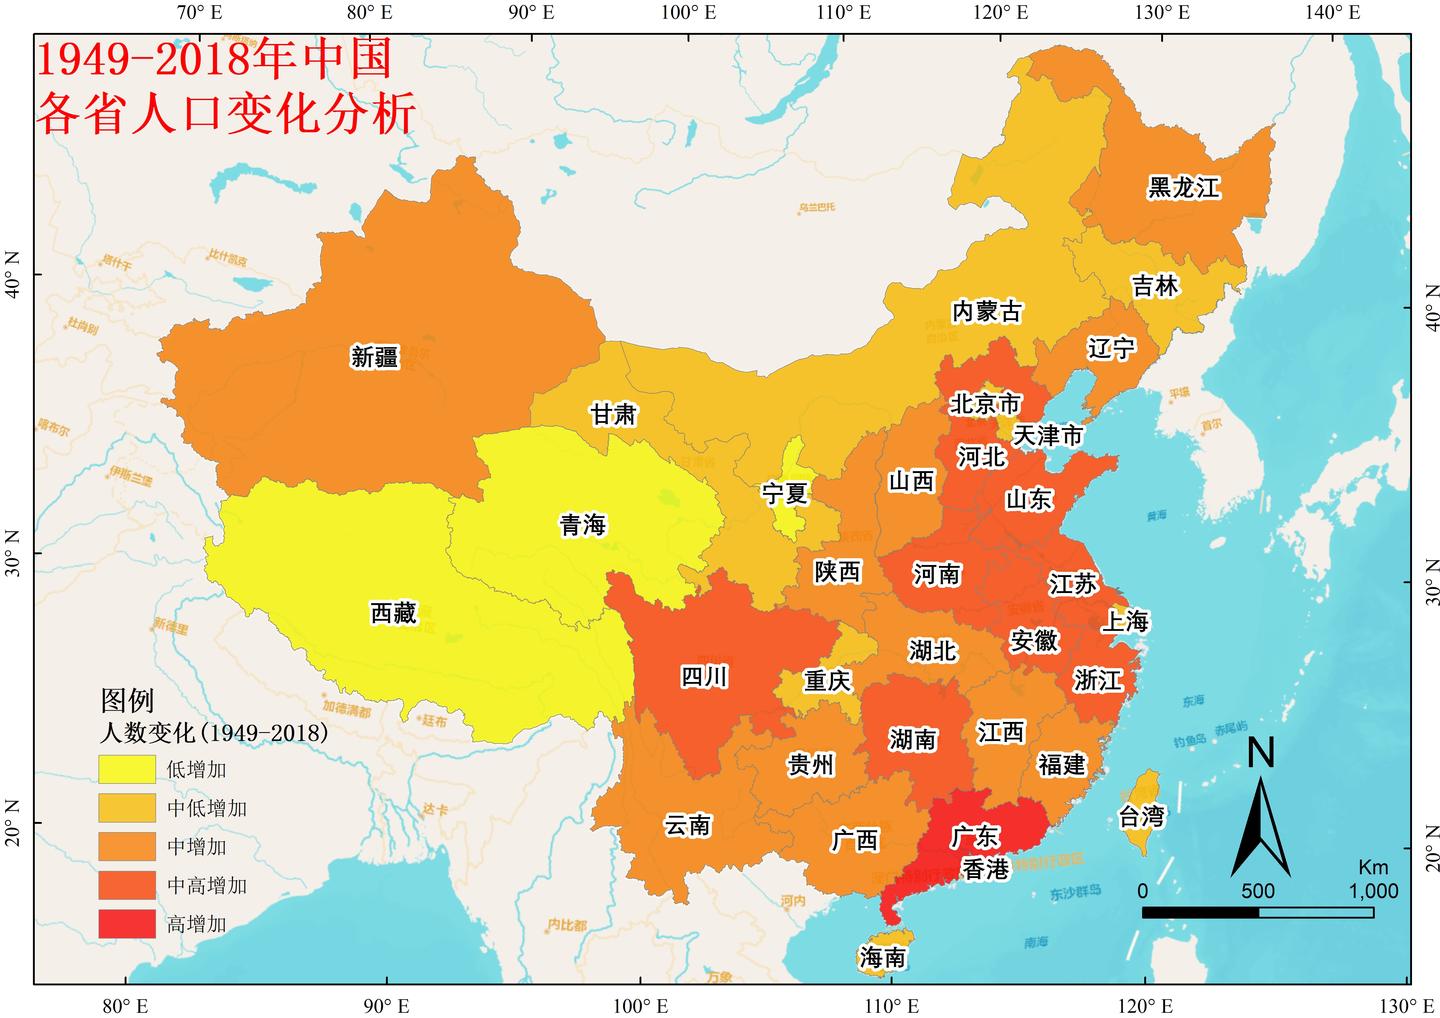 arcgis教程71专题图制作之历史地图1中国人口增长与流动分析